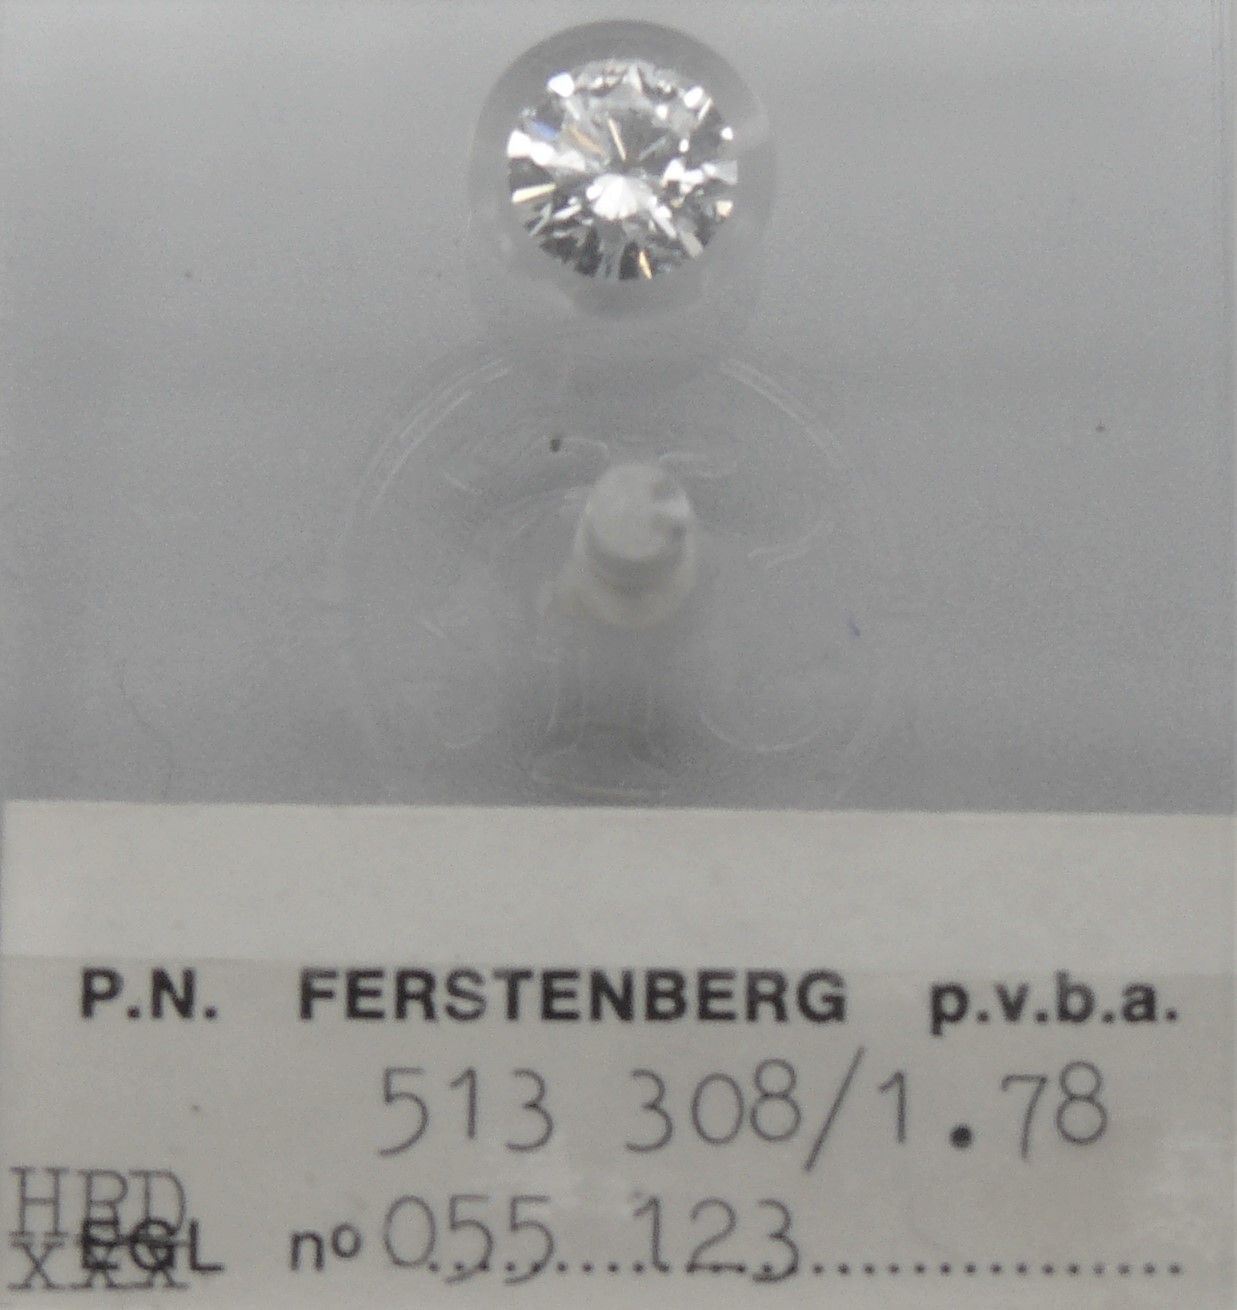 FERSTENBERG un diamant n° 513 308, sous scellé : pesant 1,78 carats, taille bril&hellip;